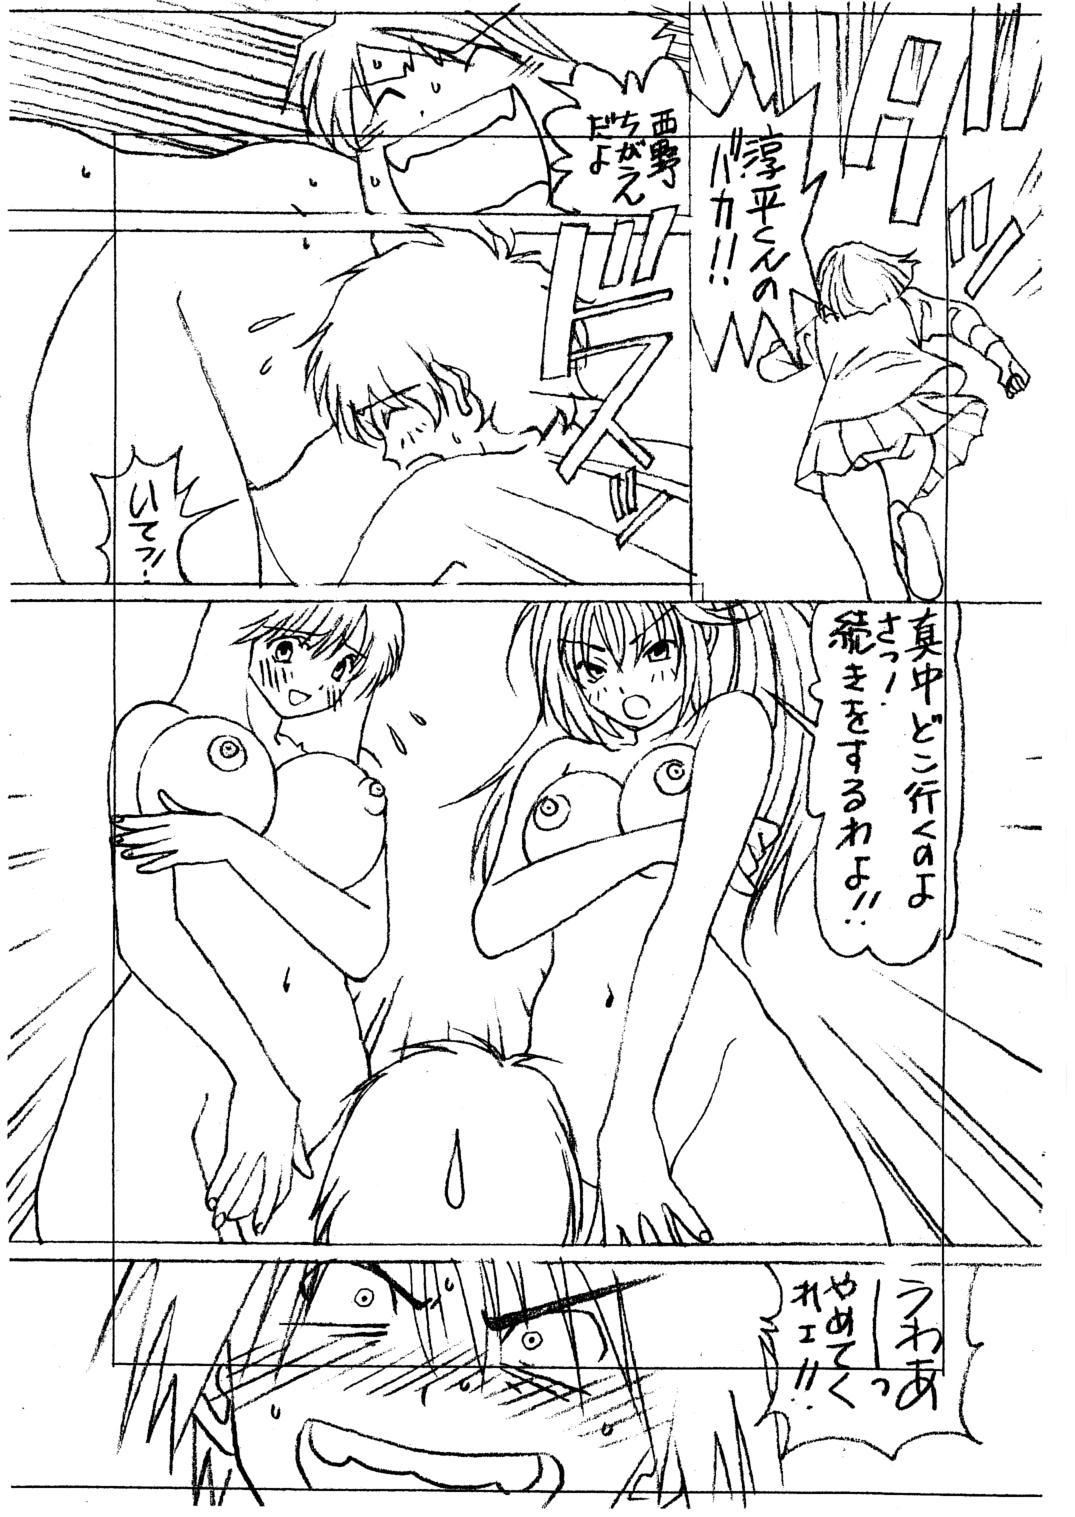 Shy Ichigo 100% vol. 1.5 - Ichigo 100 Analsex - Page 8